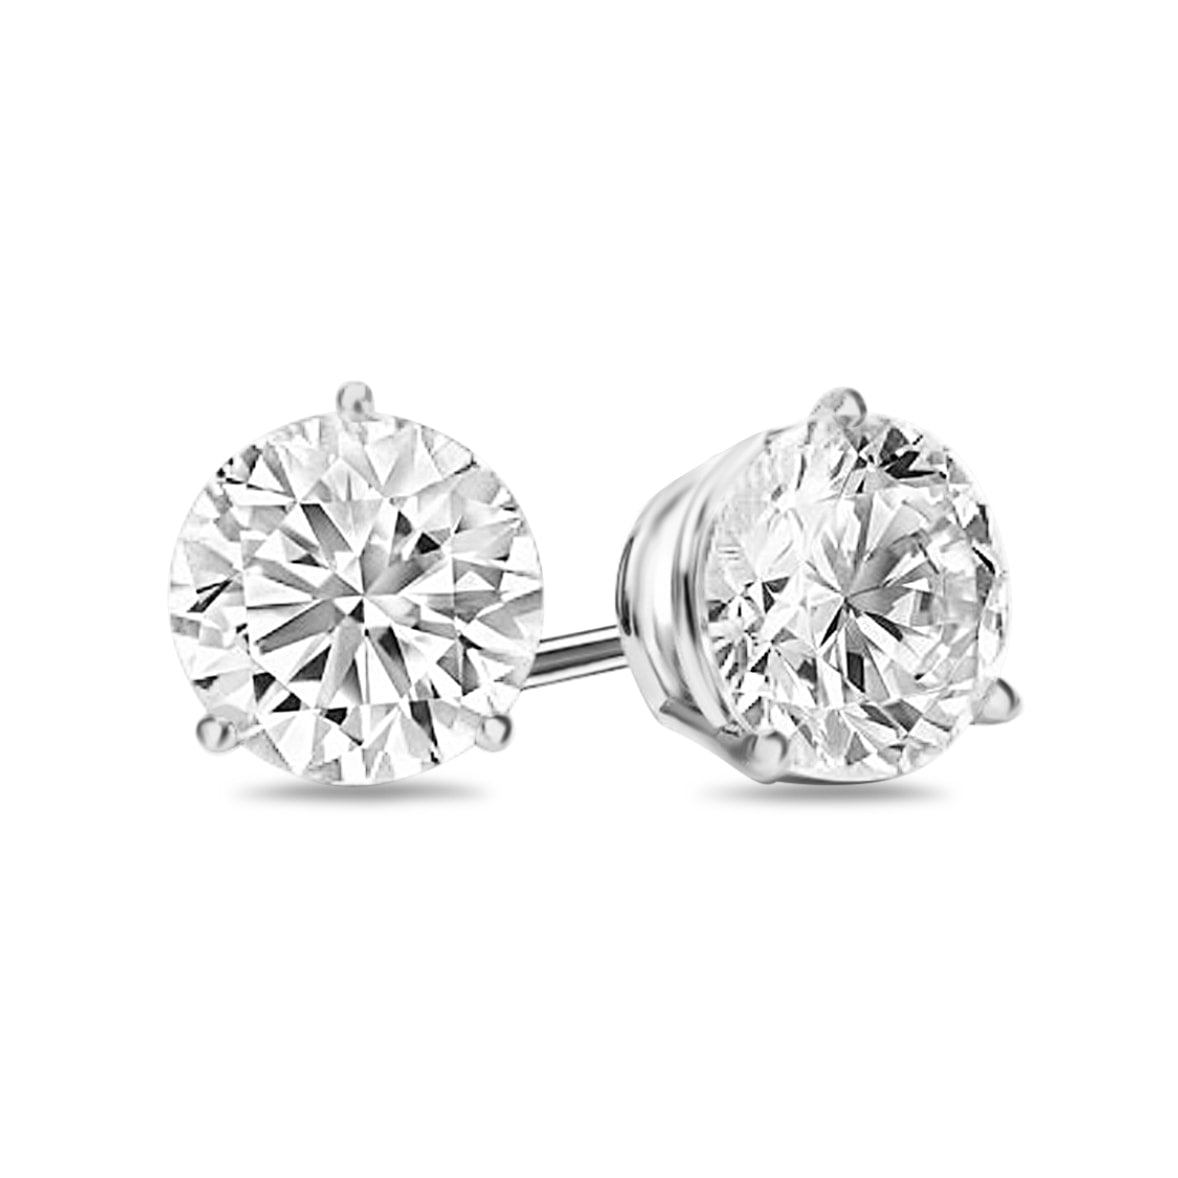 Novena 3 Prong Diamond Earrings in 18k White Gold Vermeil